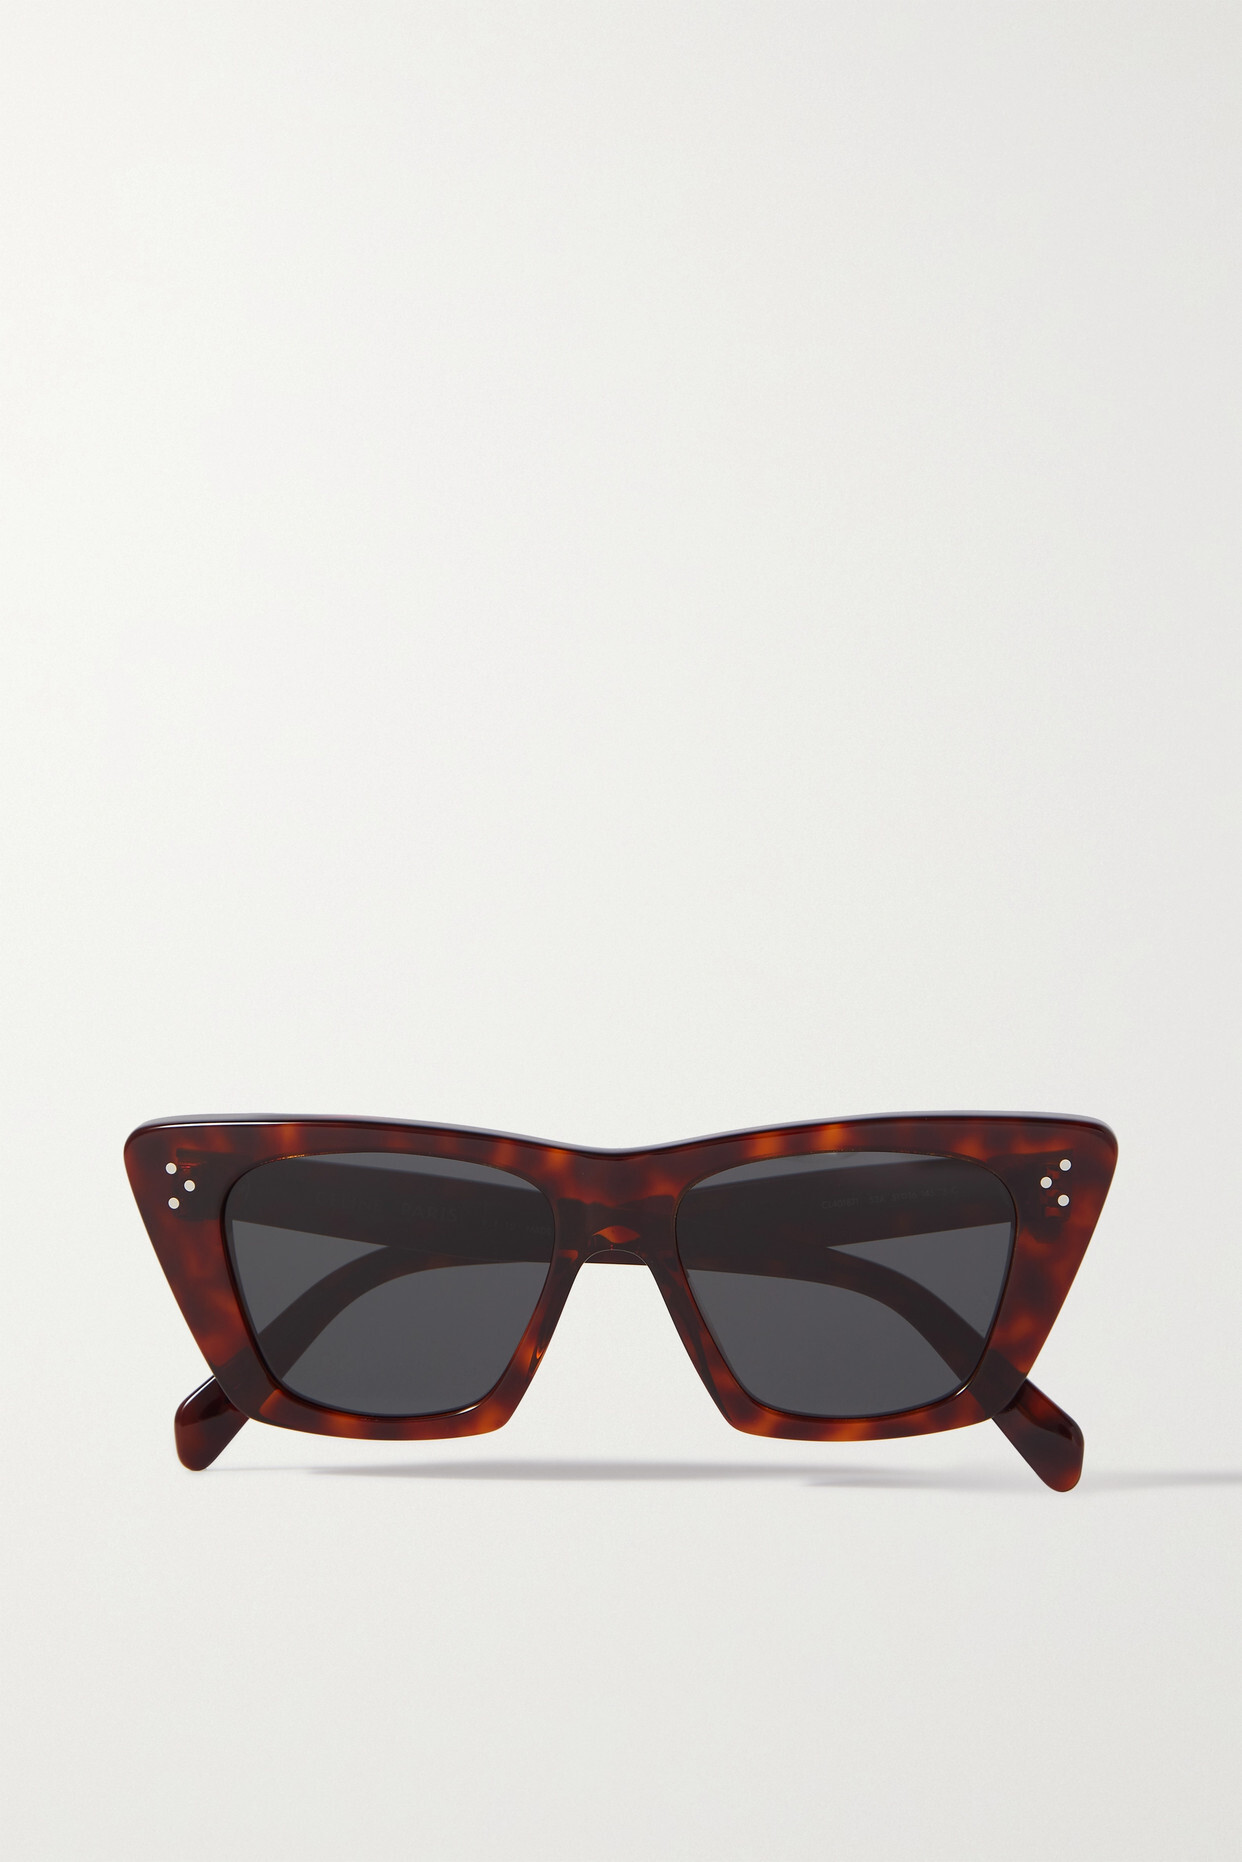 CELINE Eyewear - Cat-eye Tortoiseshell Acetate Sunglasses - One size